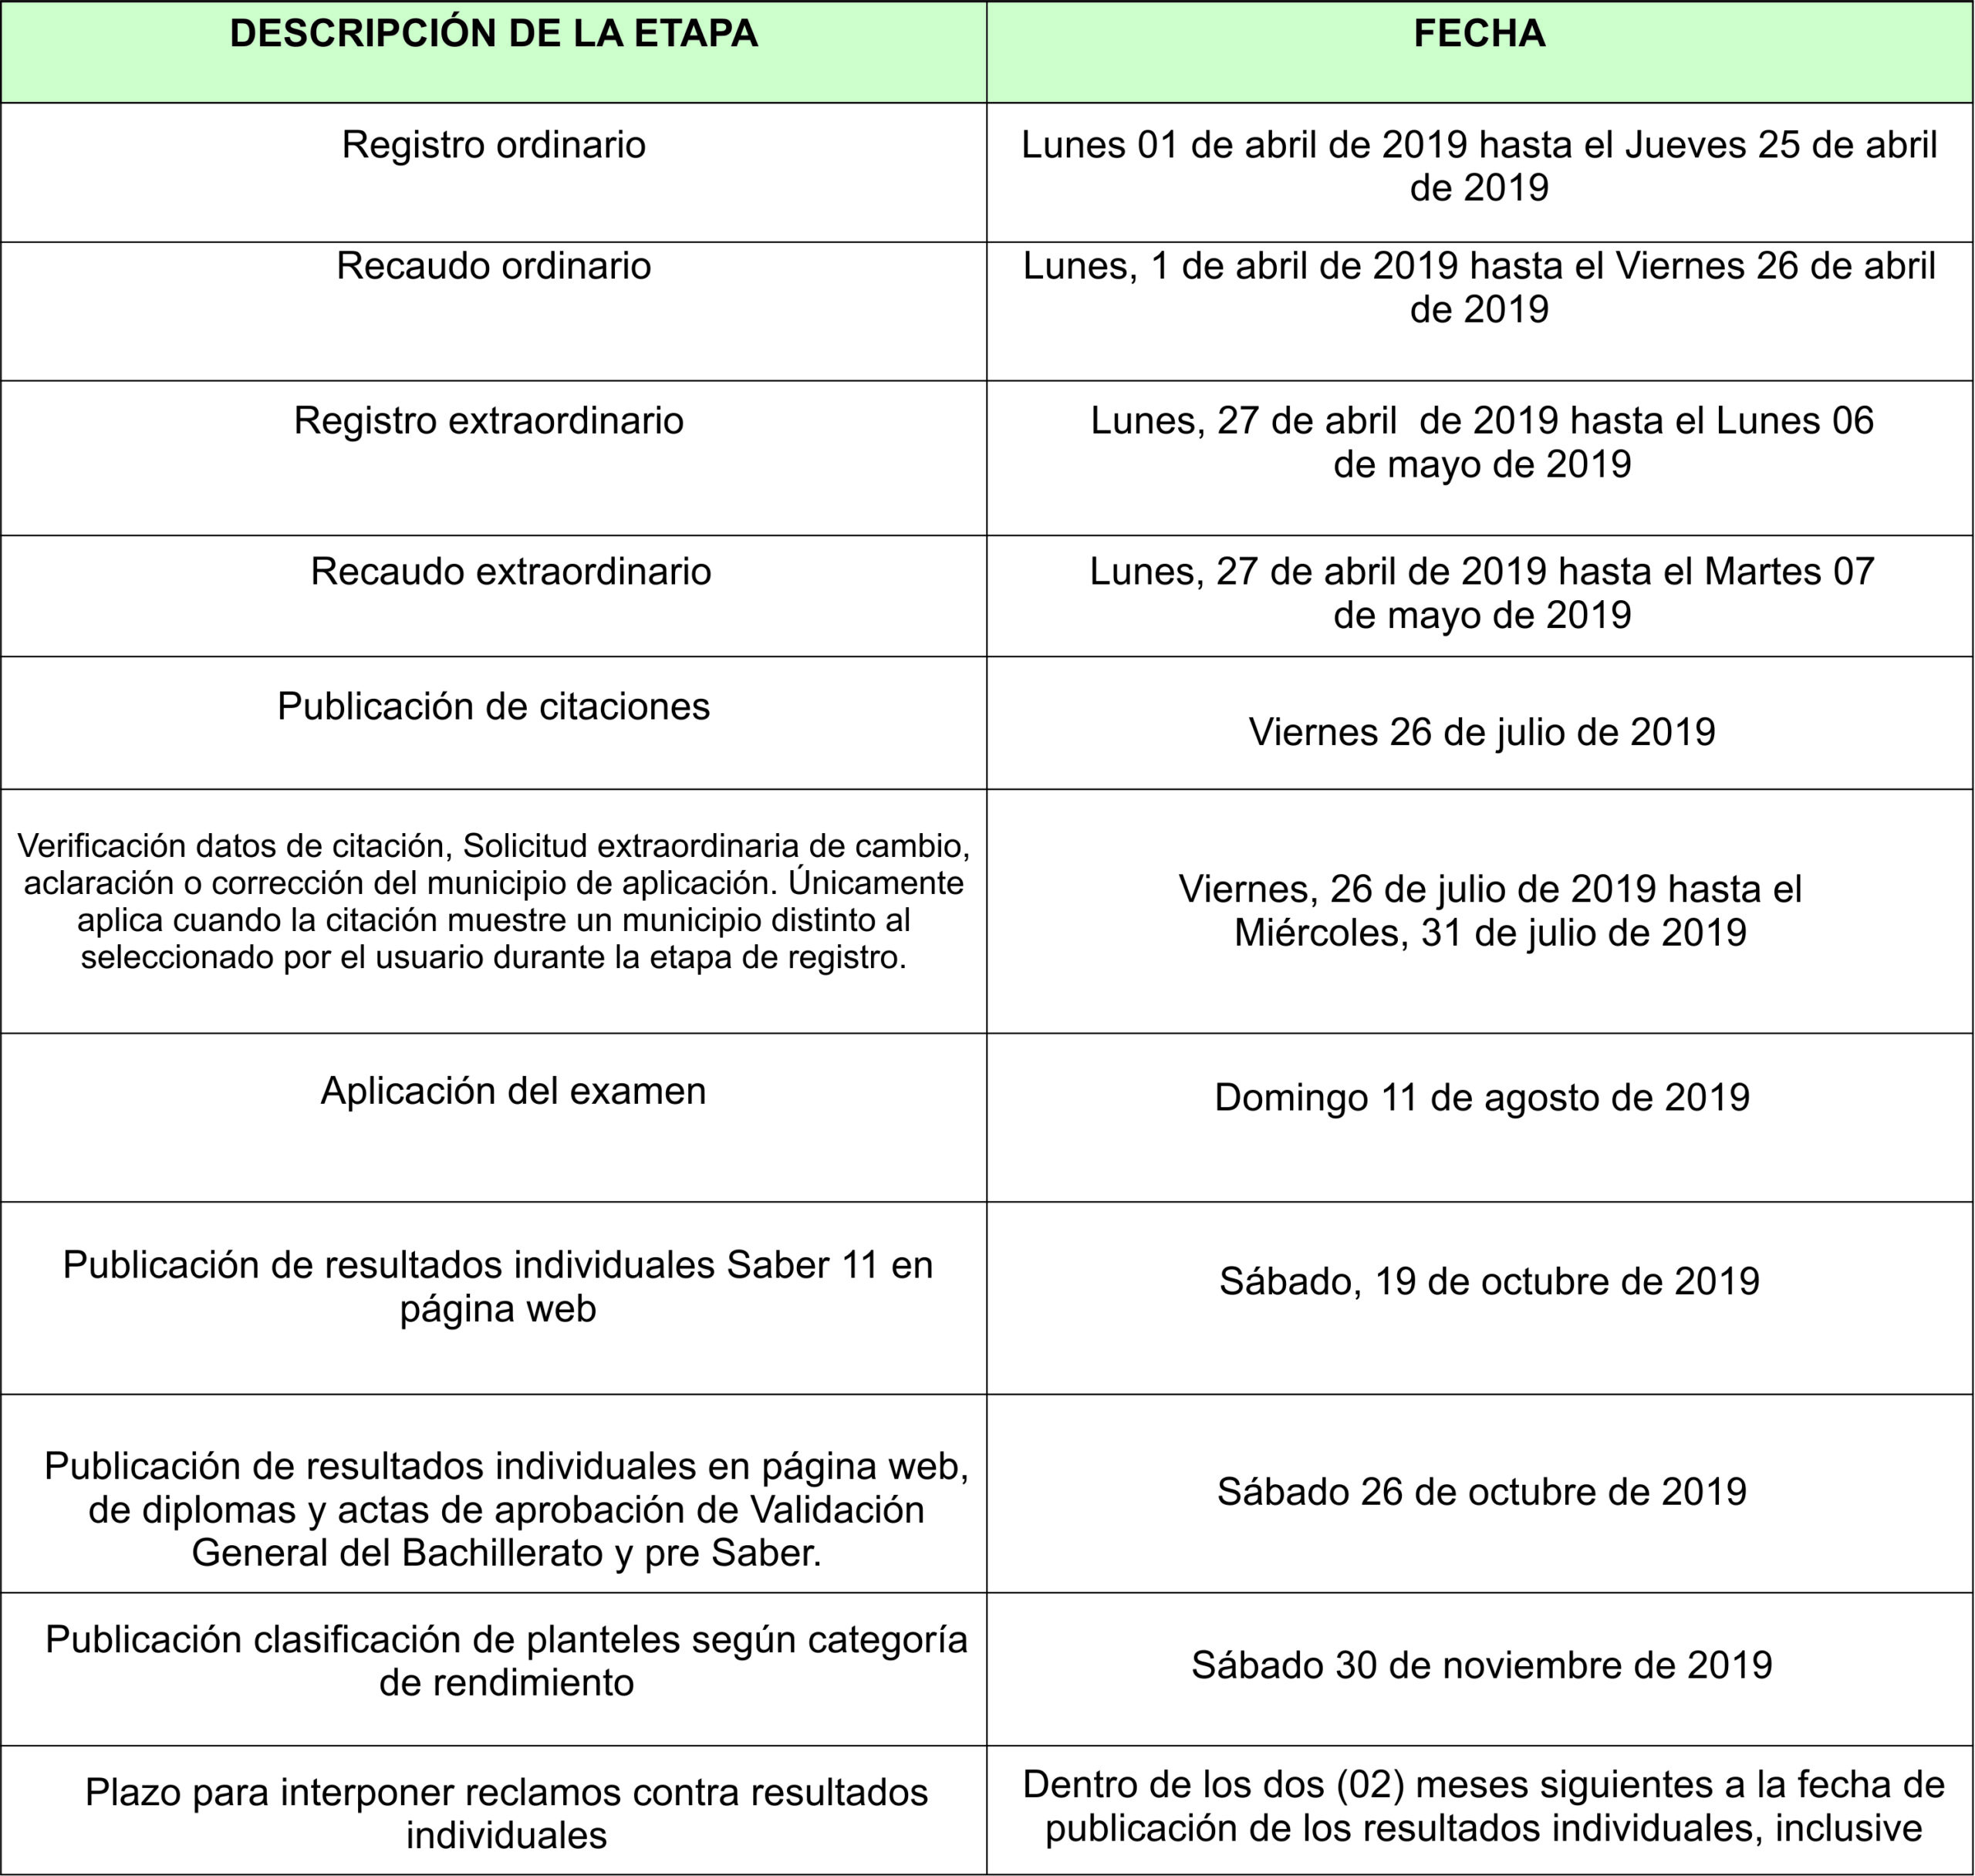 calendario fechas icfes 2019 segundo semestre-1